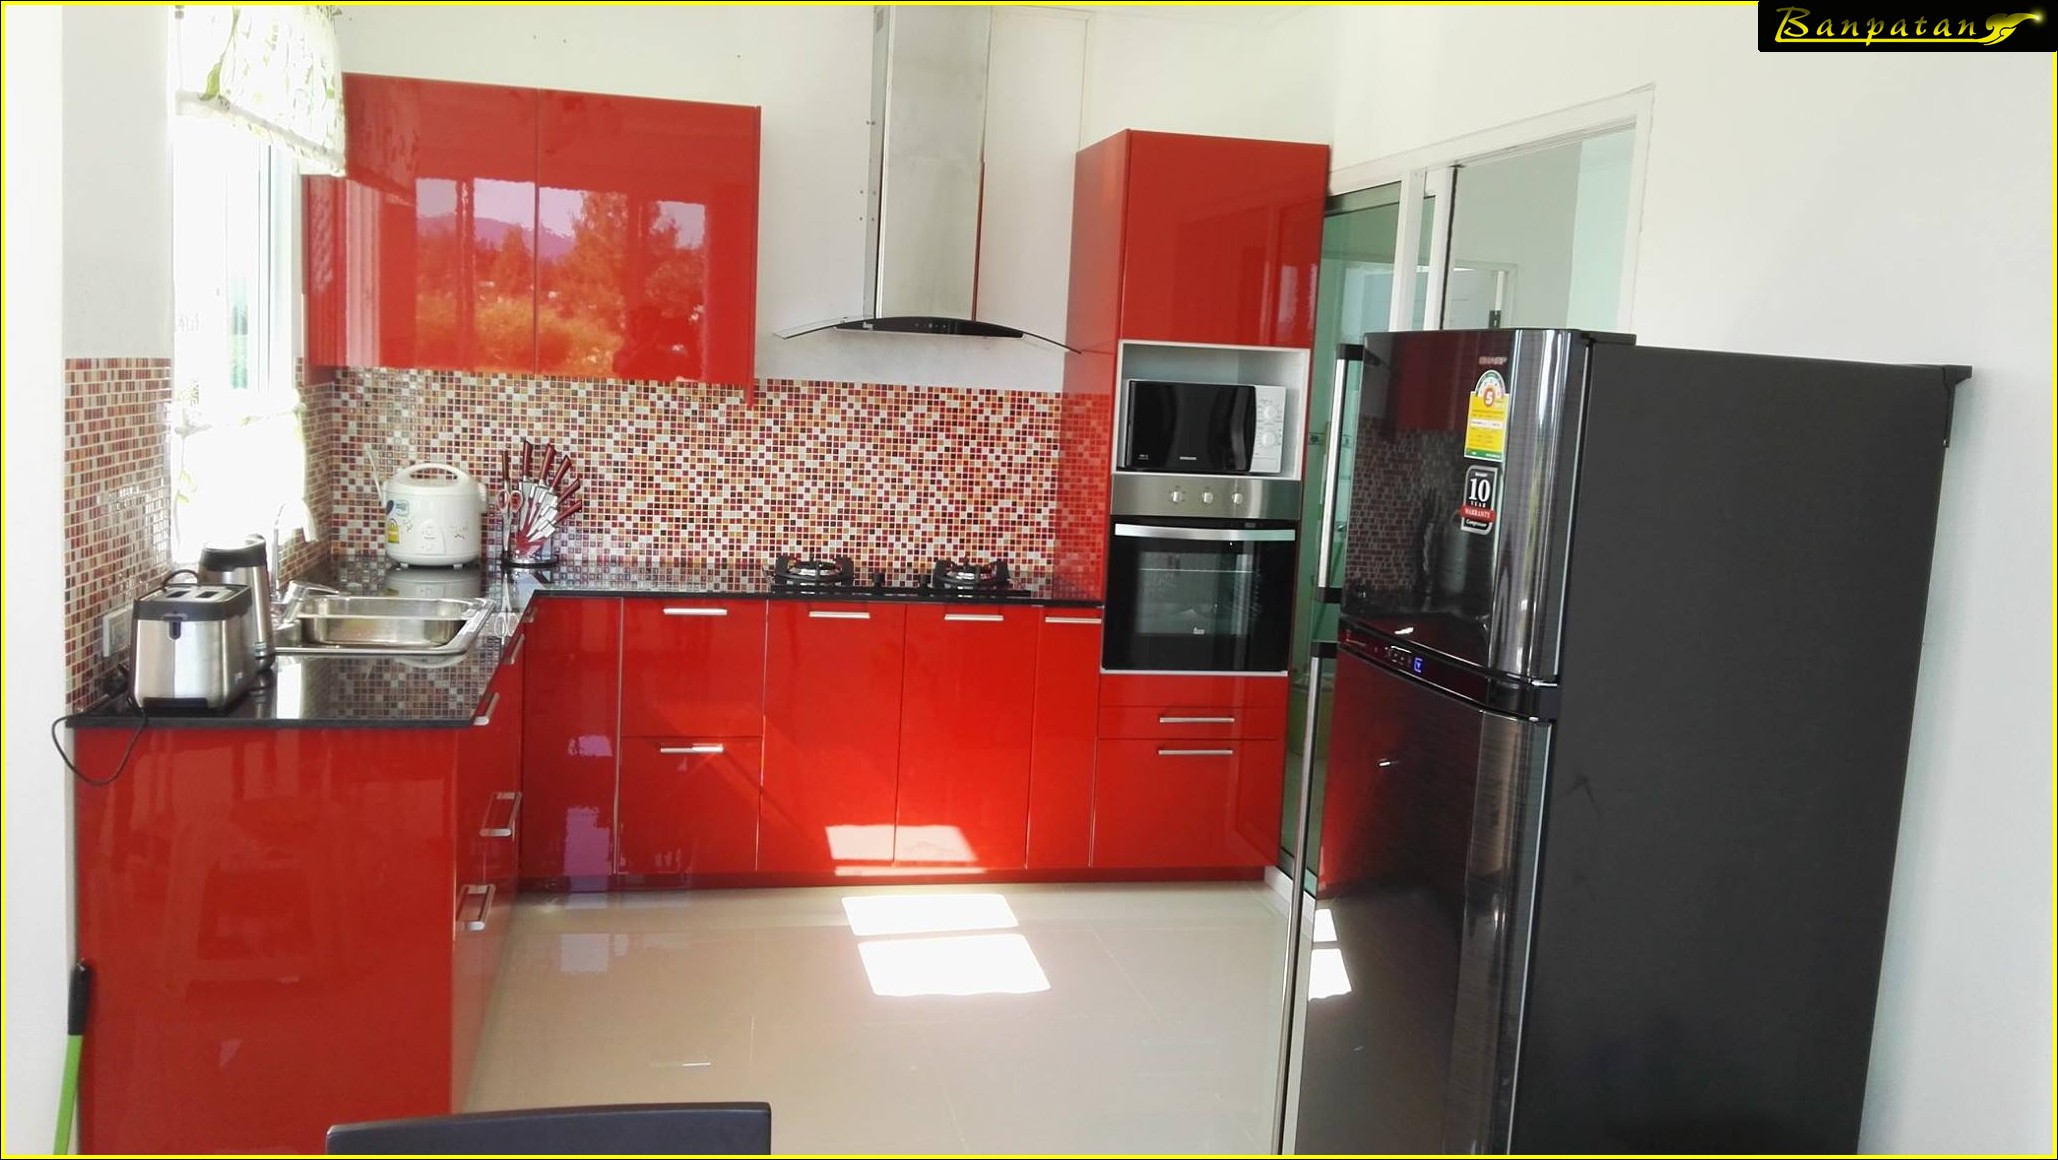 ห้องครัวโทนสีแดง